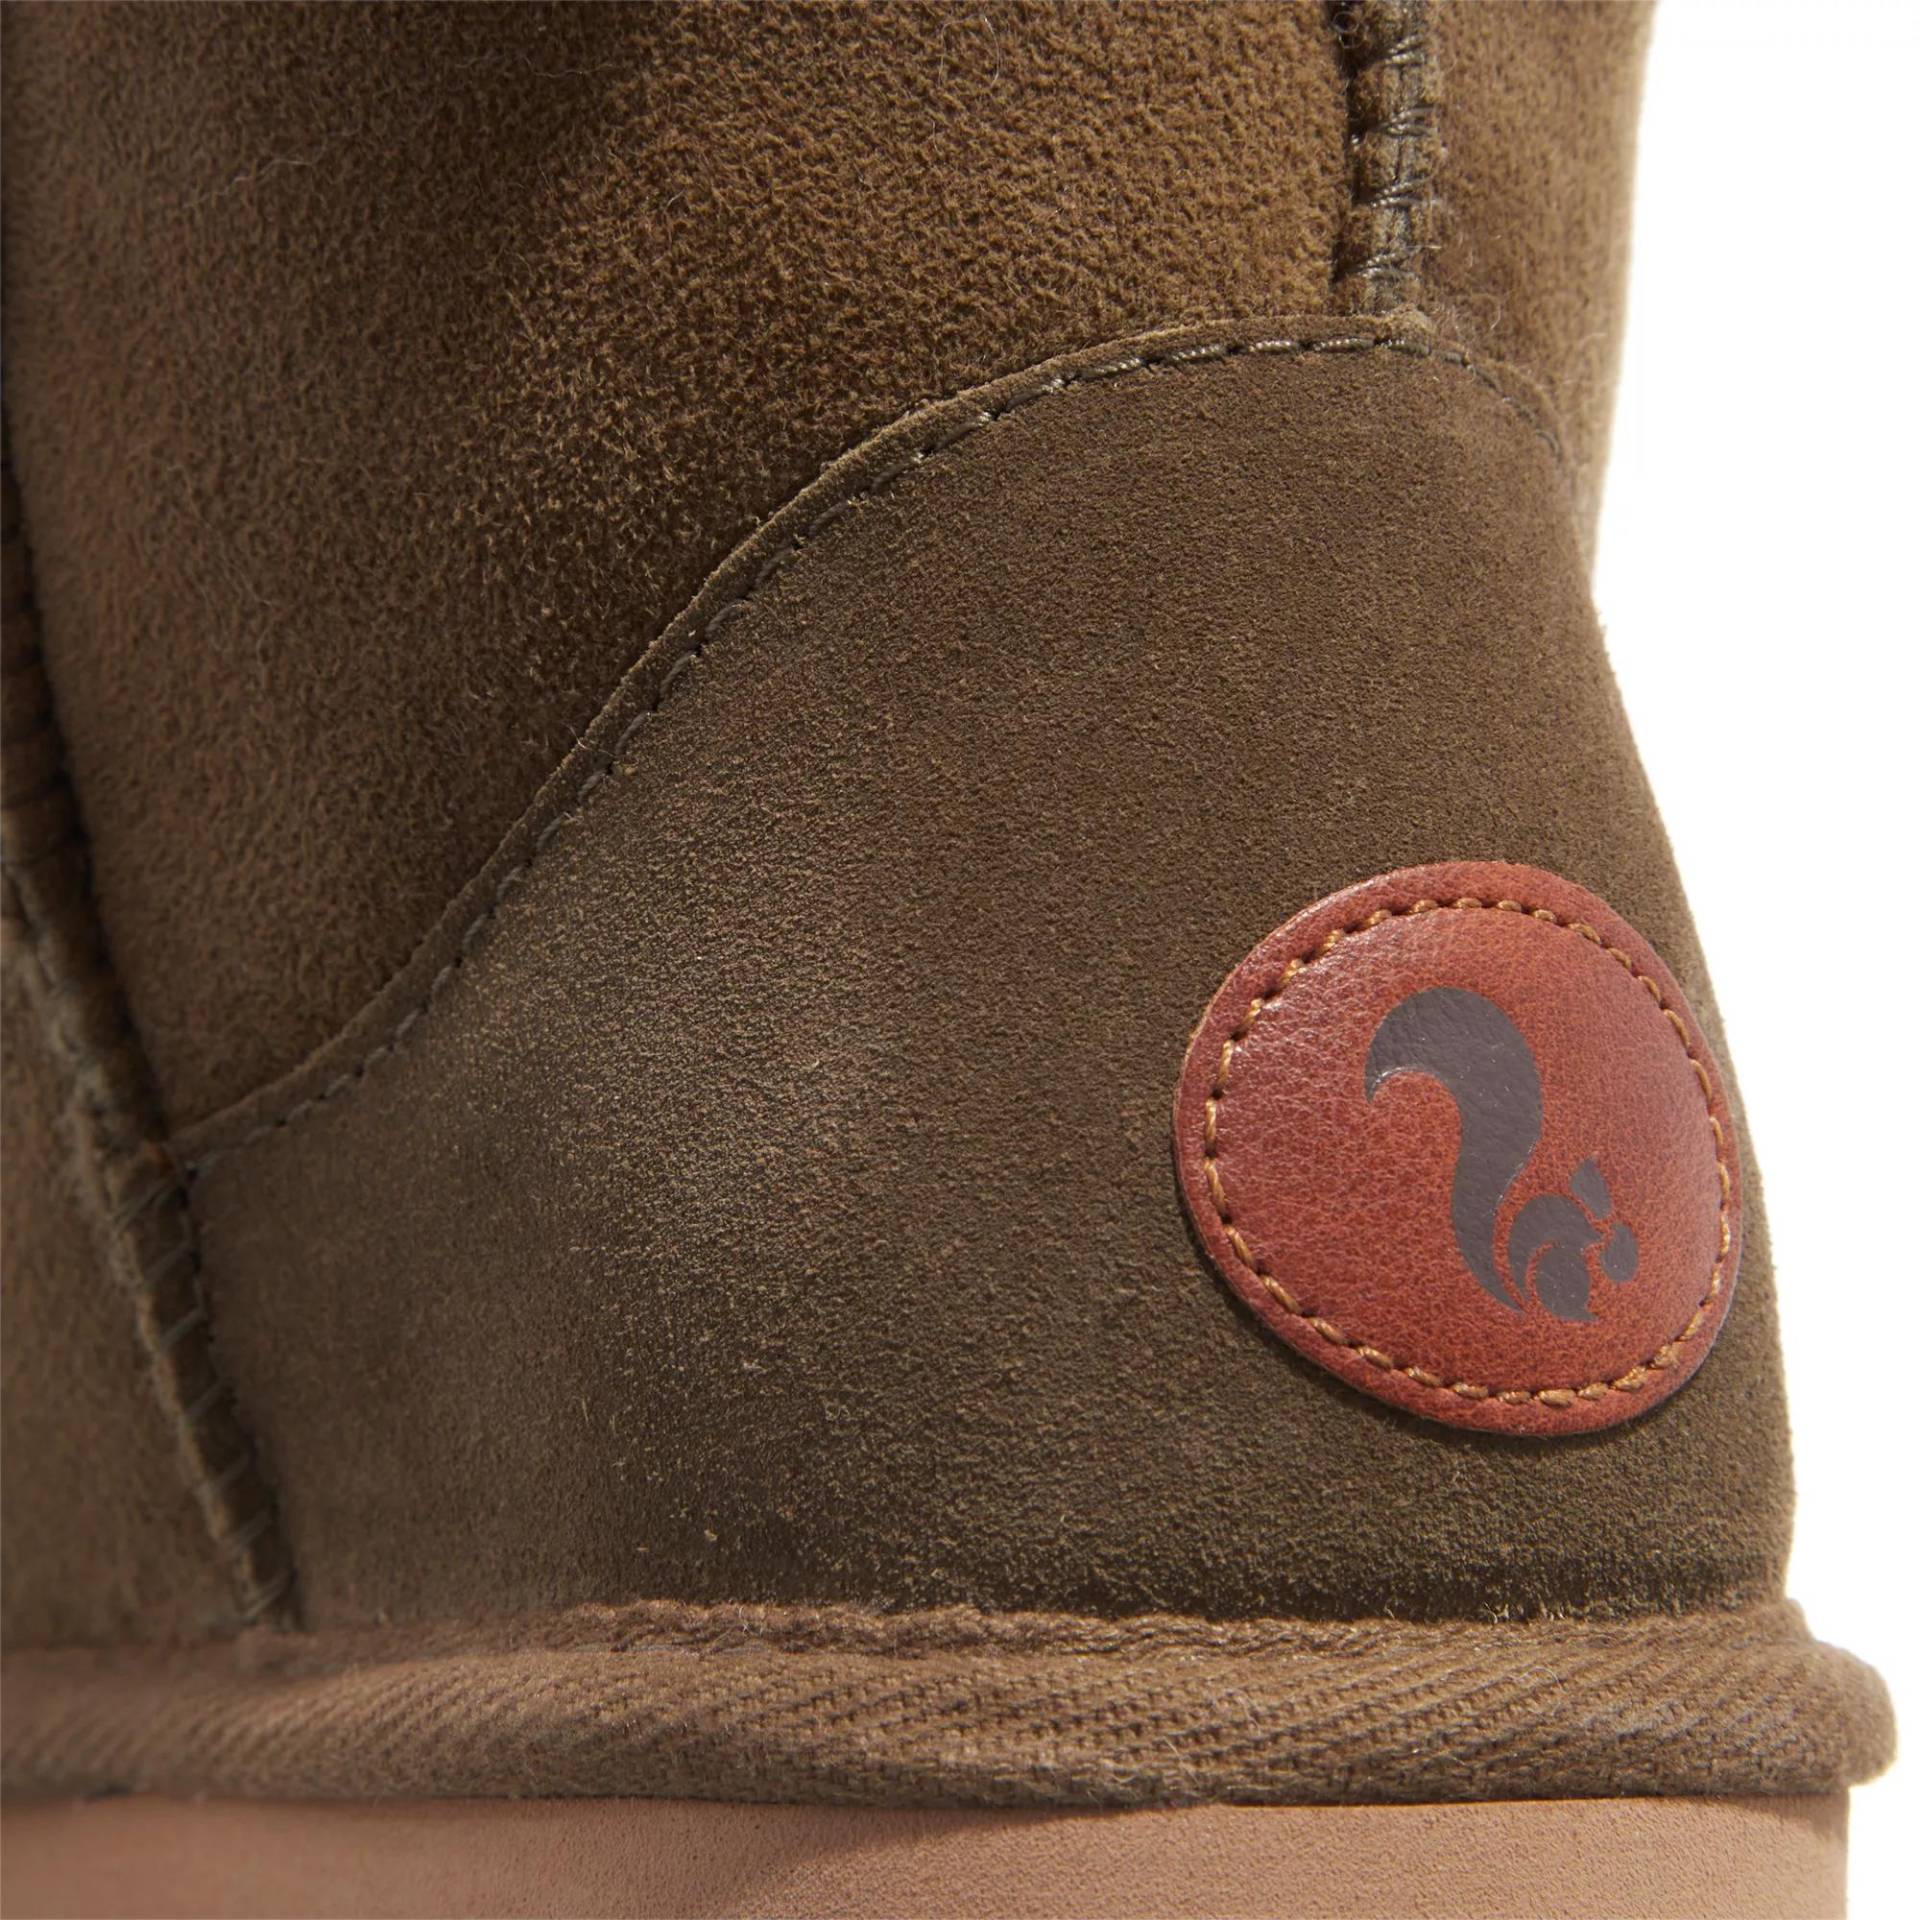 thies Sneakers - thies 1856 ® Classic Sheepskin boot olive (W) - Gr. 41 (EU) - in Grün - für Damen von thies